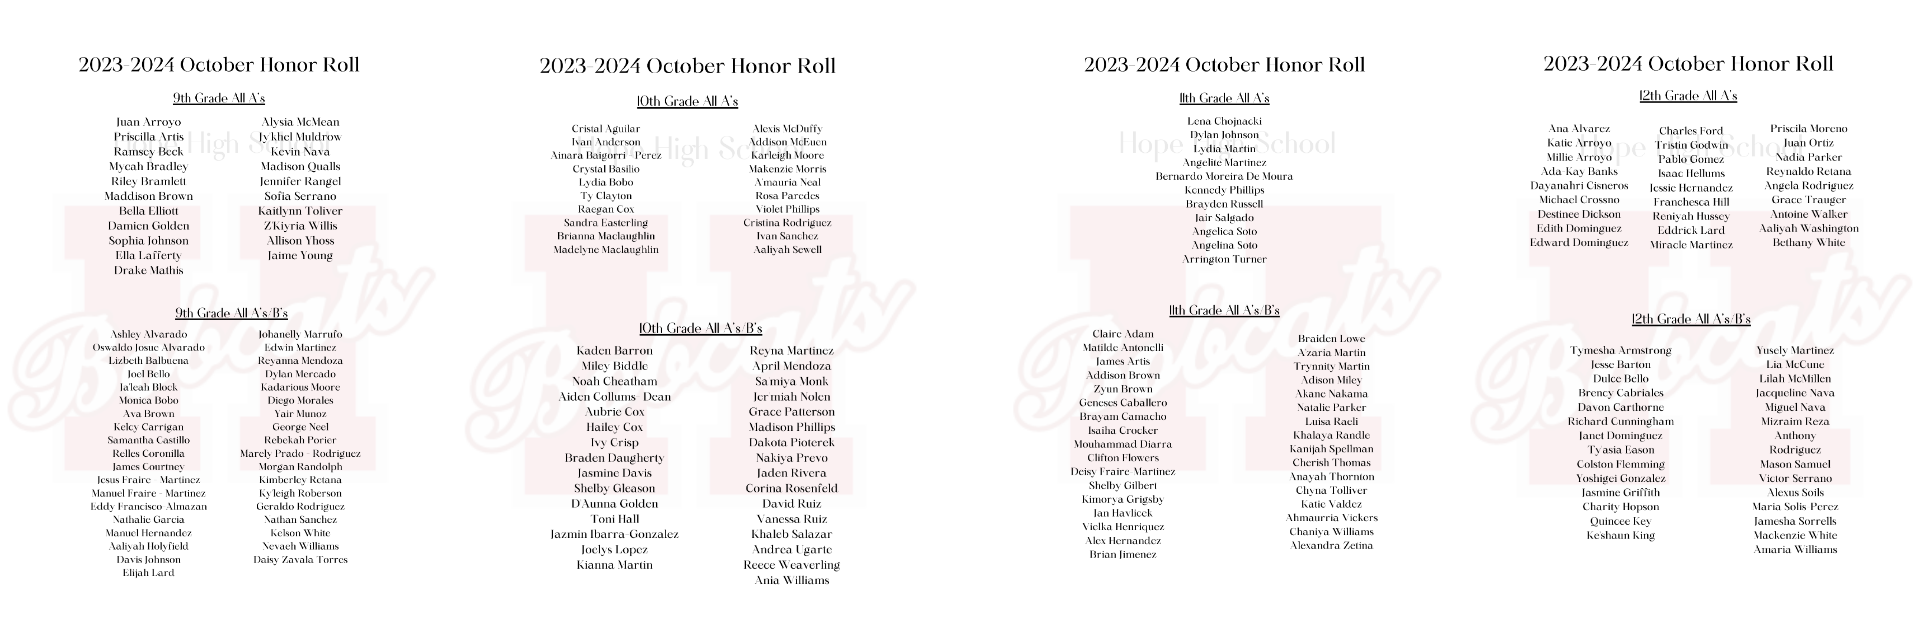 Honor Roll october 23